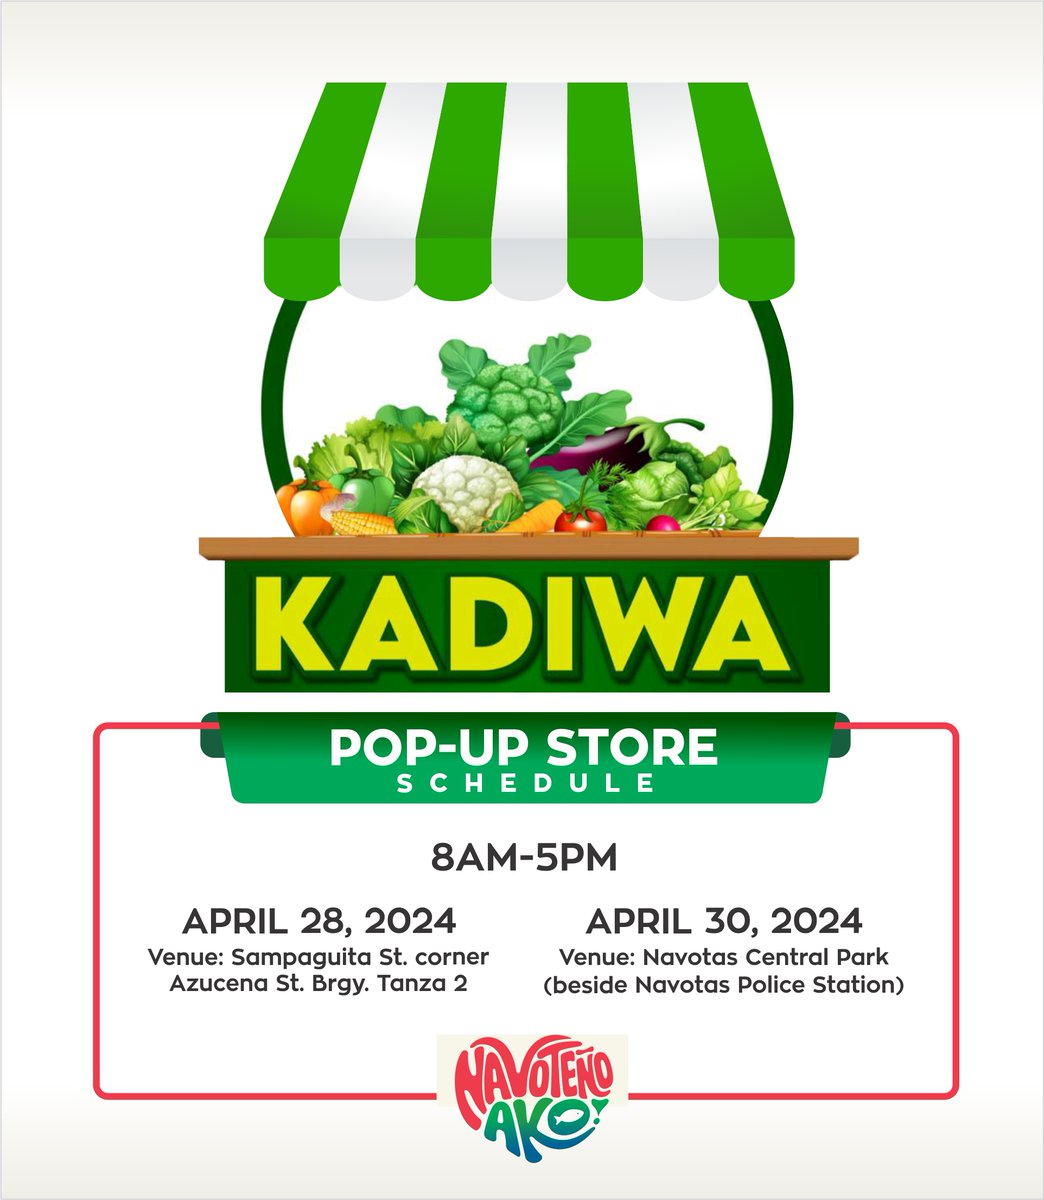 Narito ang schedule ng Kadiwa ng Pangulo at Kadiwa Pop-up Store sa ating lungsod ngayong 2024. Sugod na para sa murang gulay, prutas, at iba pang mga produkto! #KadiwaNgPangulo #KadiwaPopUpStore #Navotas